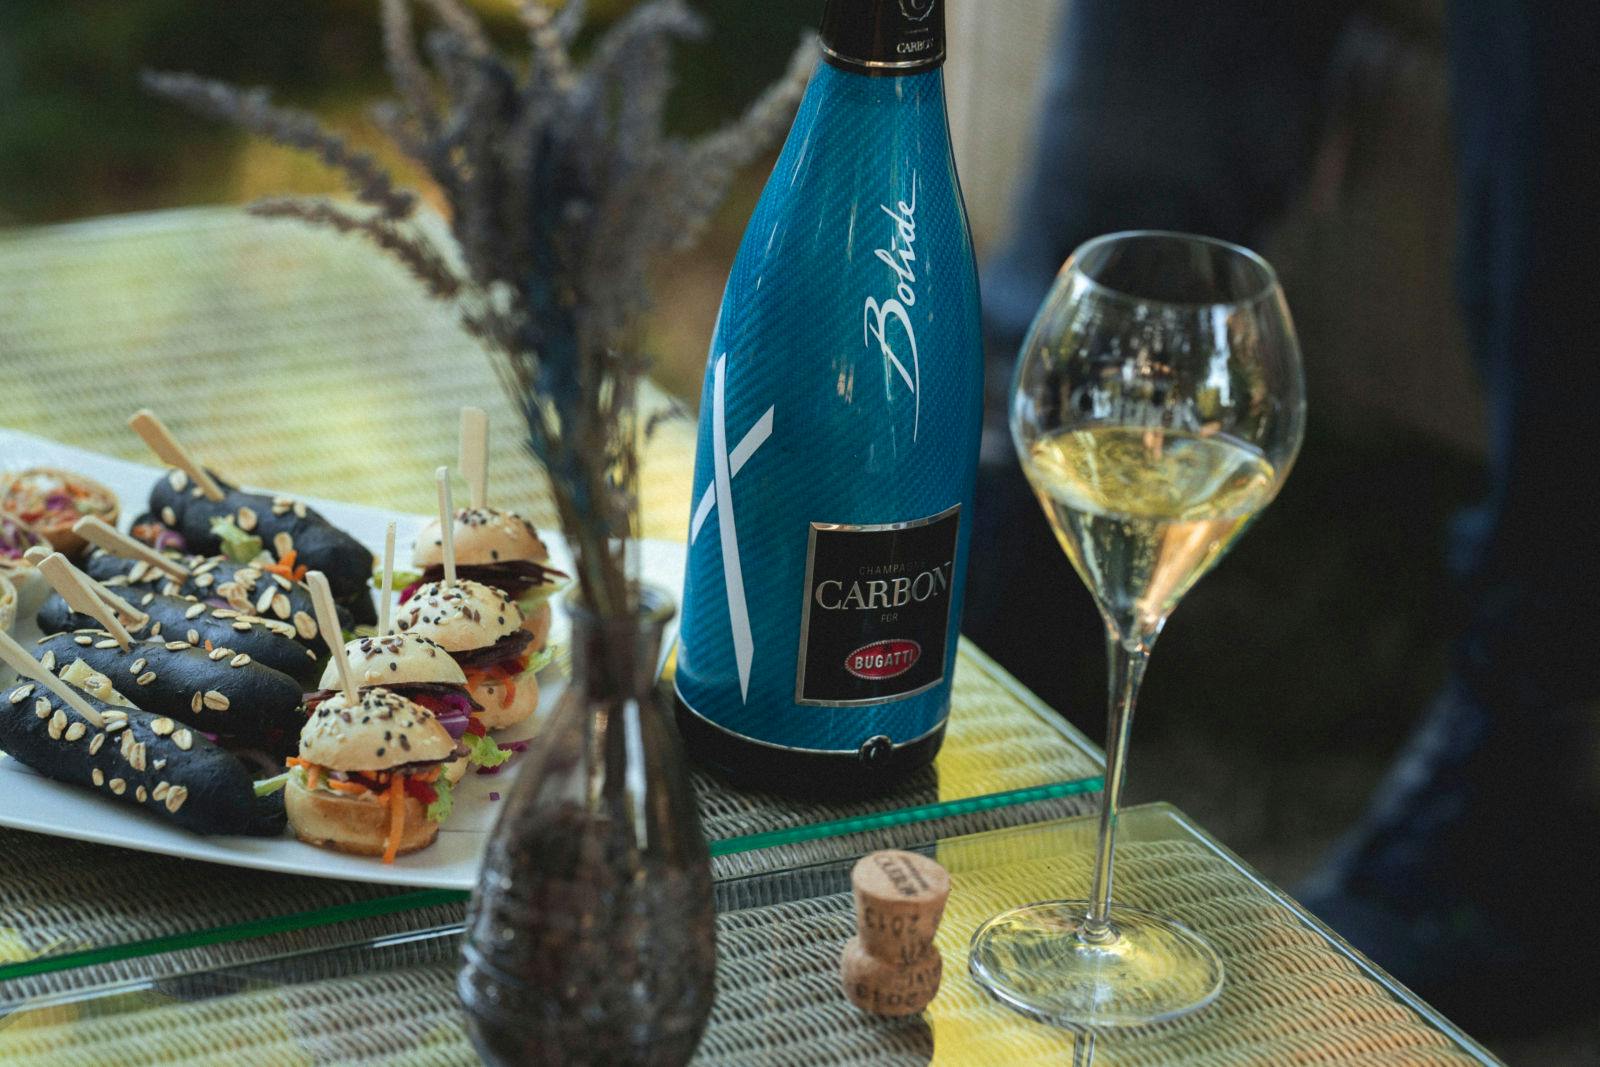 Abgerundet wurde "Eine Nacht im Château" mit einem außergewöhnlichen Dinner und einer exklusiven Champagne Carbon Verkostung.